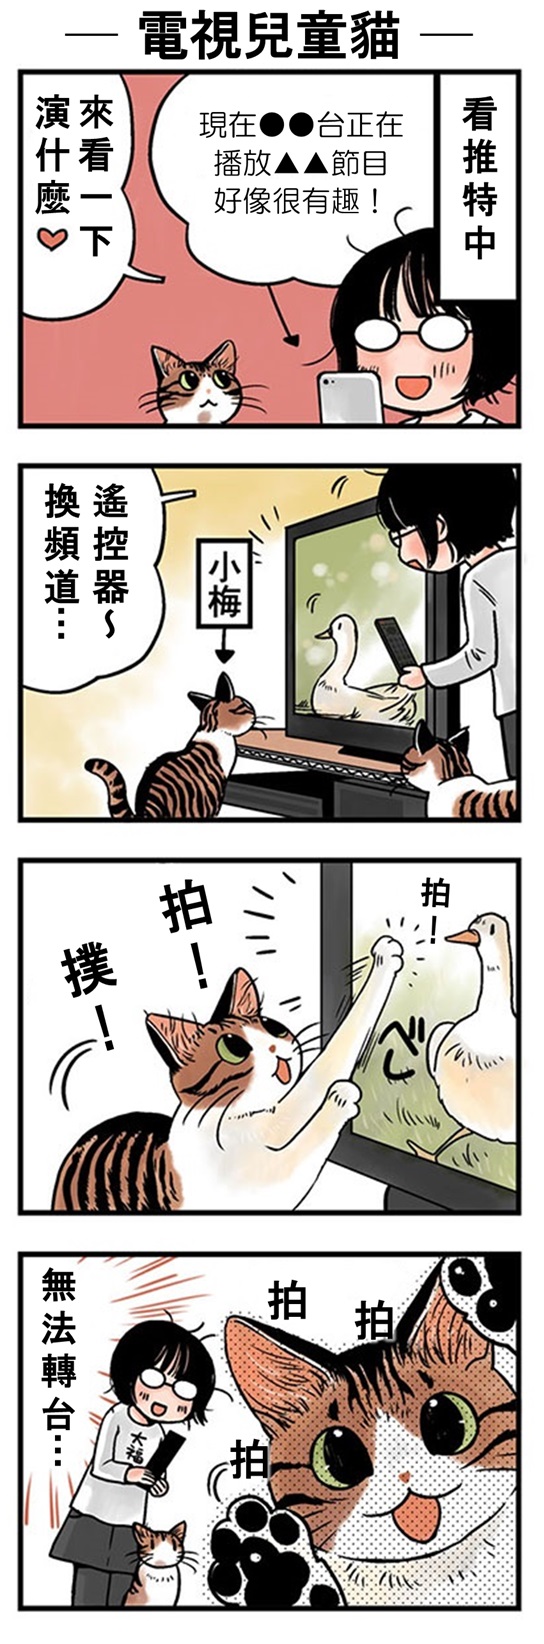 ★山野りんりん猫まみれ漫画★65話-1.jpg